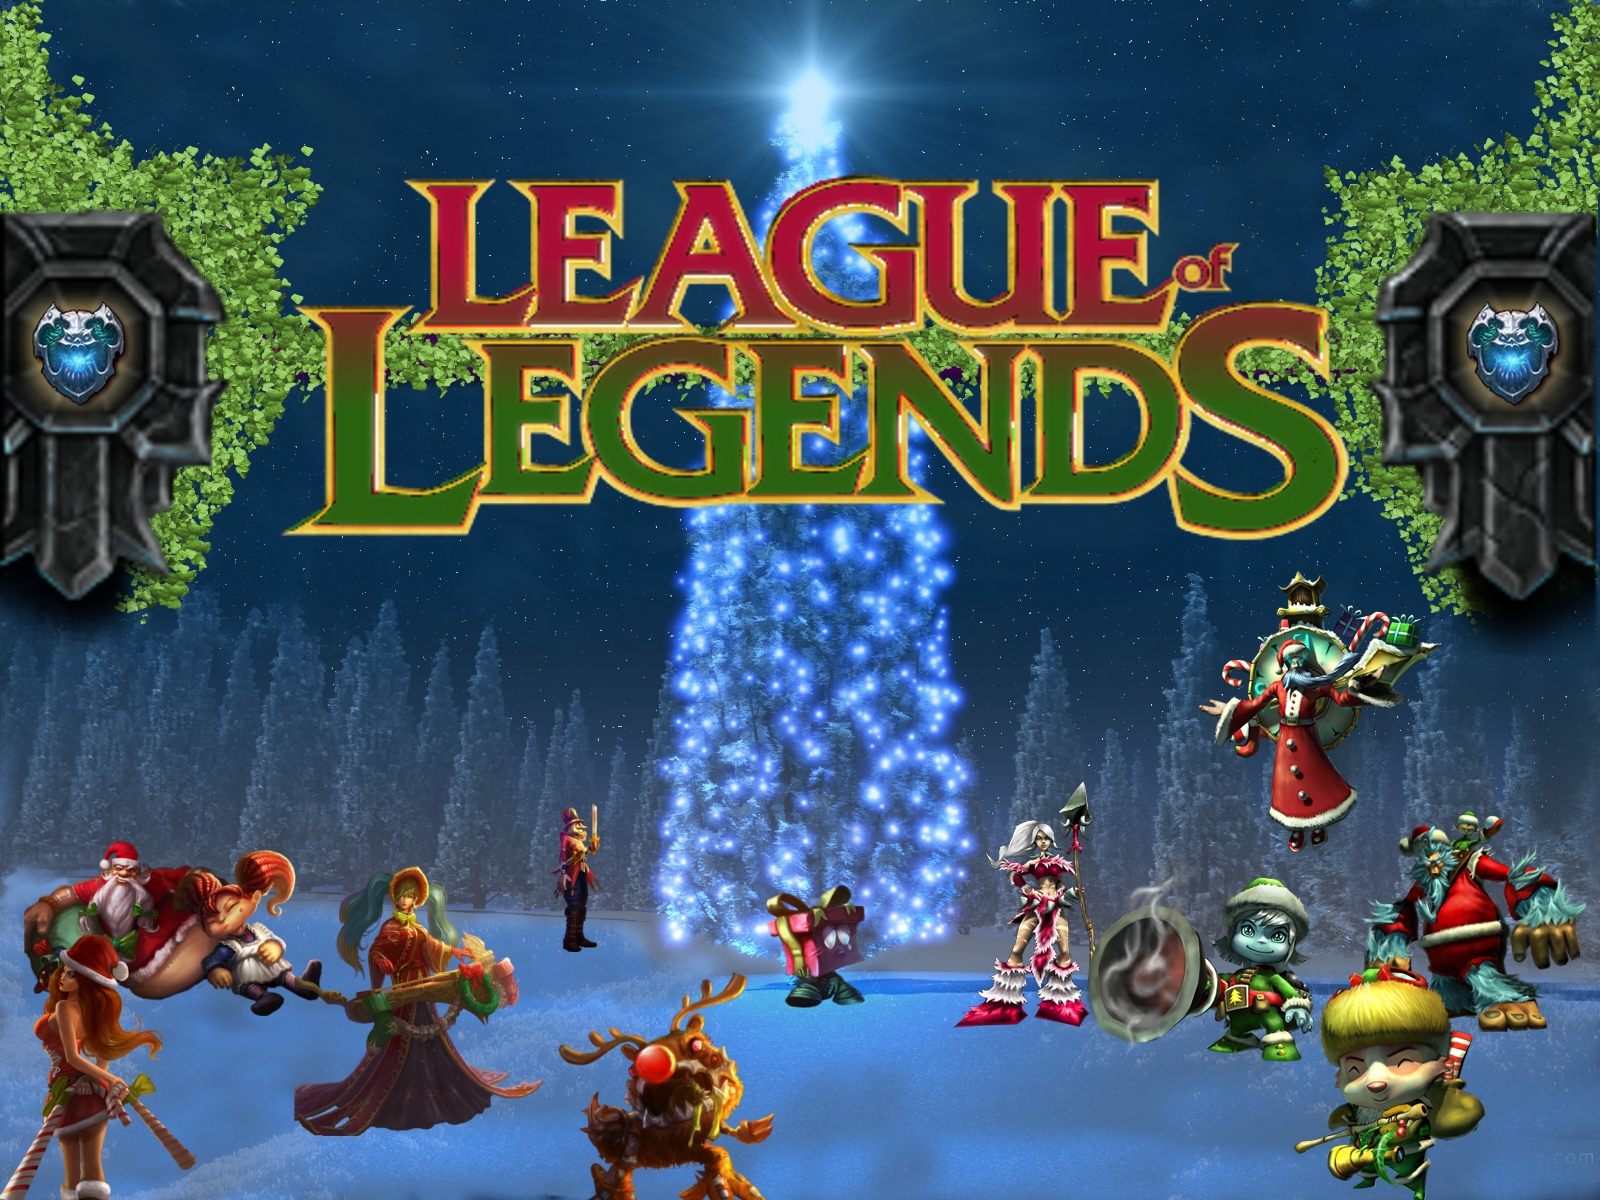 League of Legends Wallpaper: December 2010